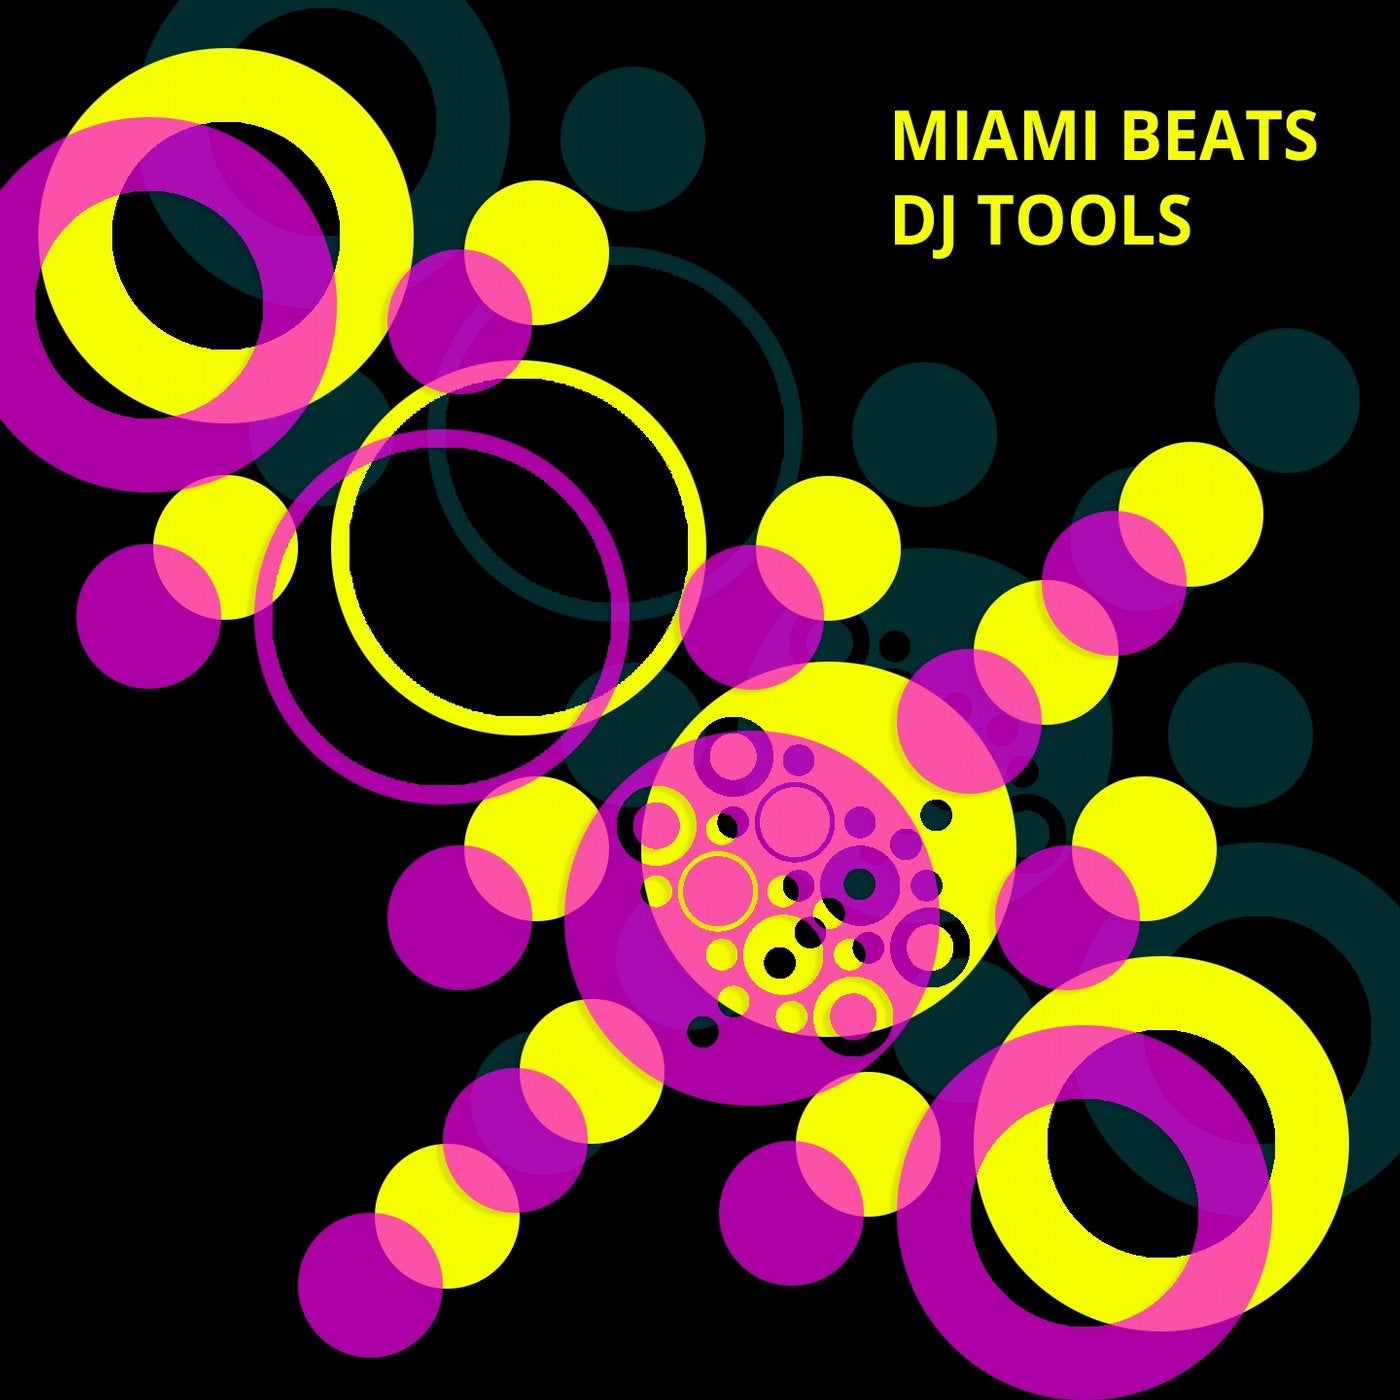 Miami Beats DJ Tools